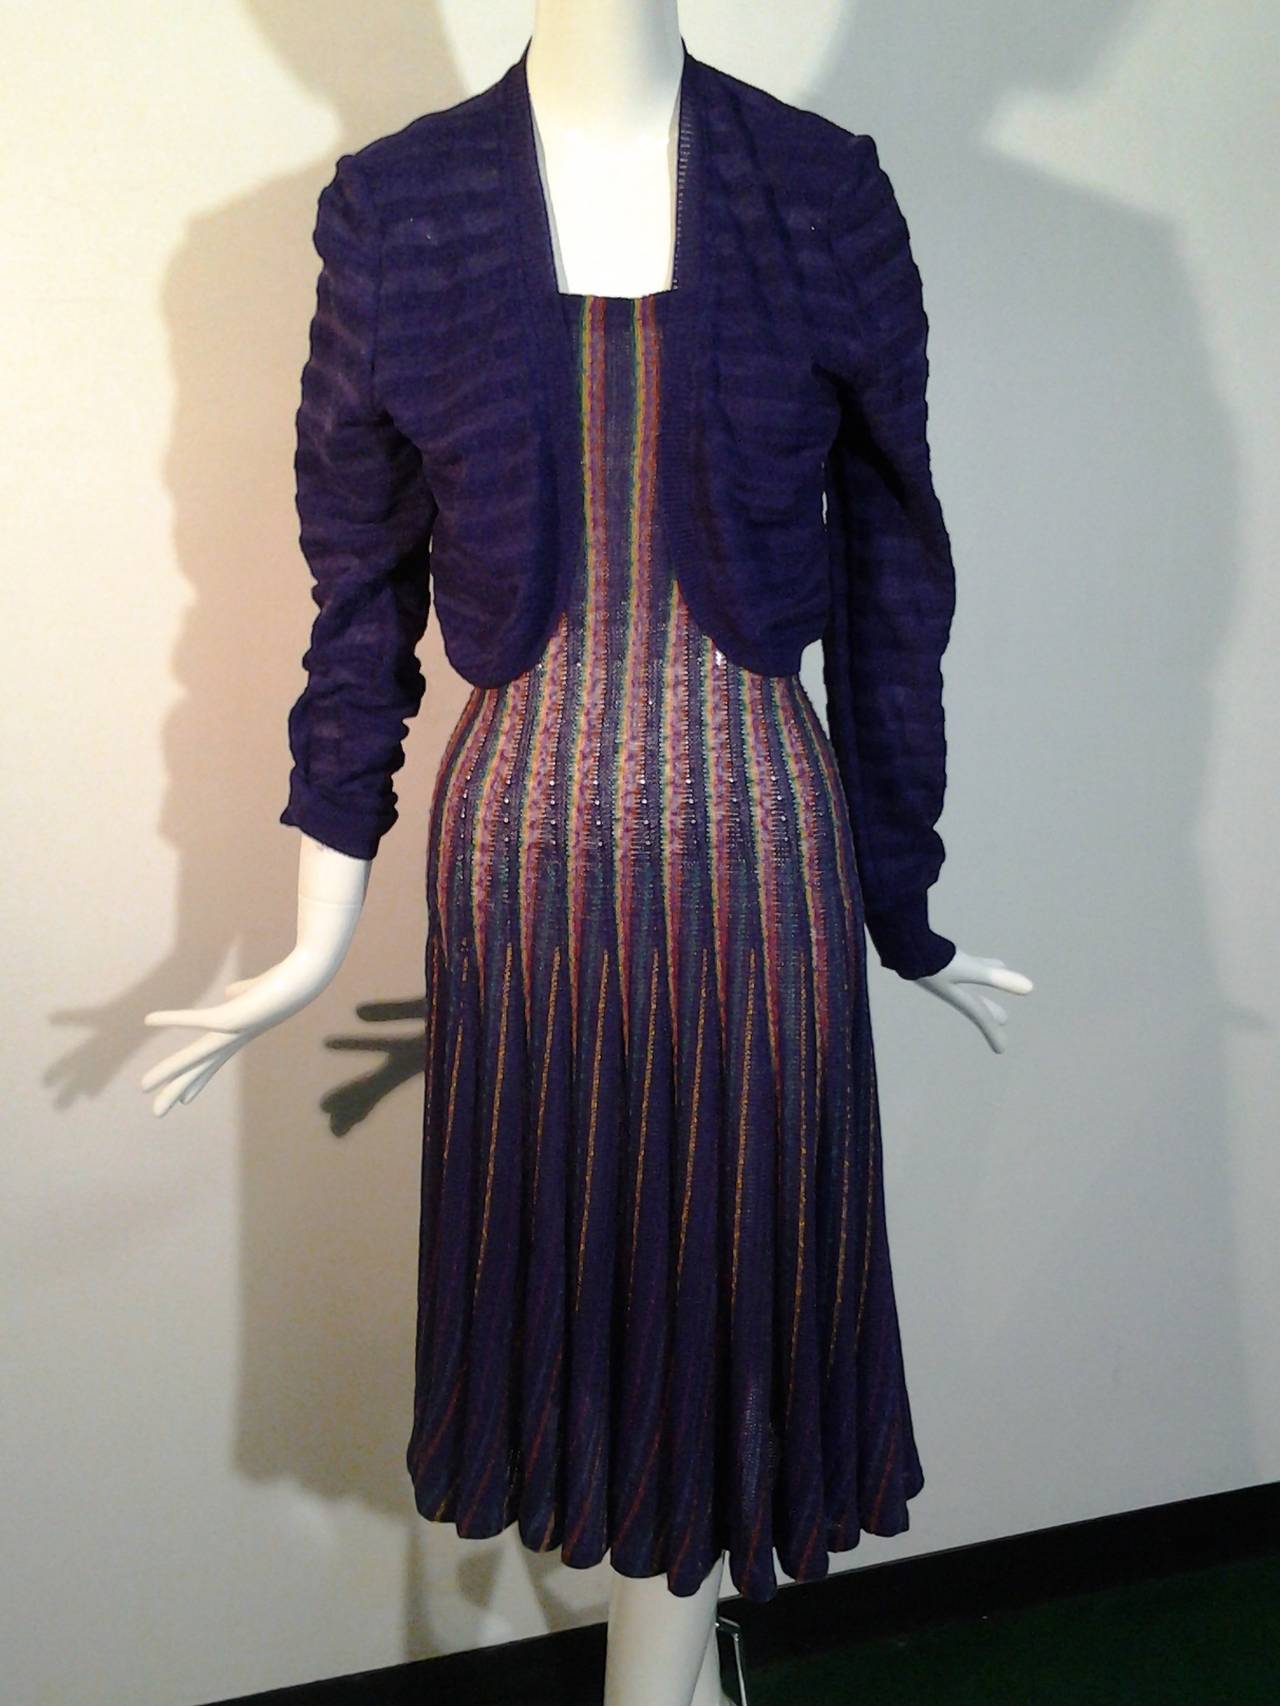 A beautiful classic Missoni linen and wool boucle blend rib knit dress with bolero jacket.